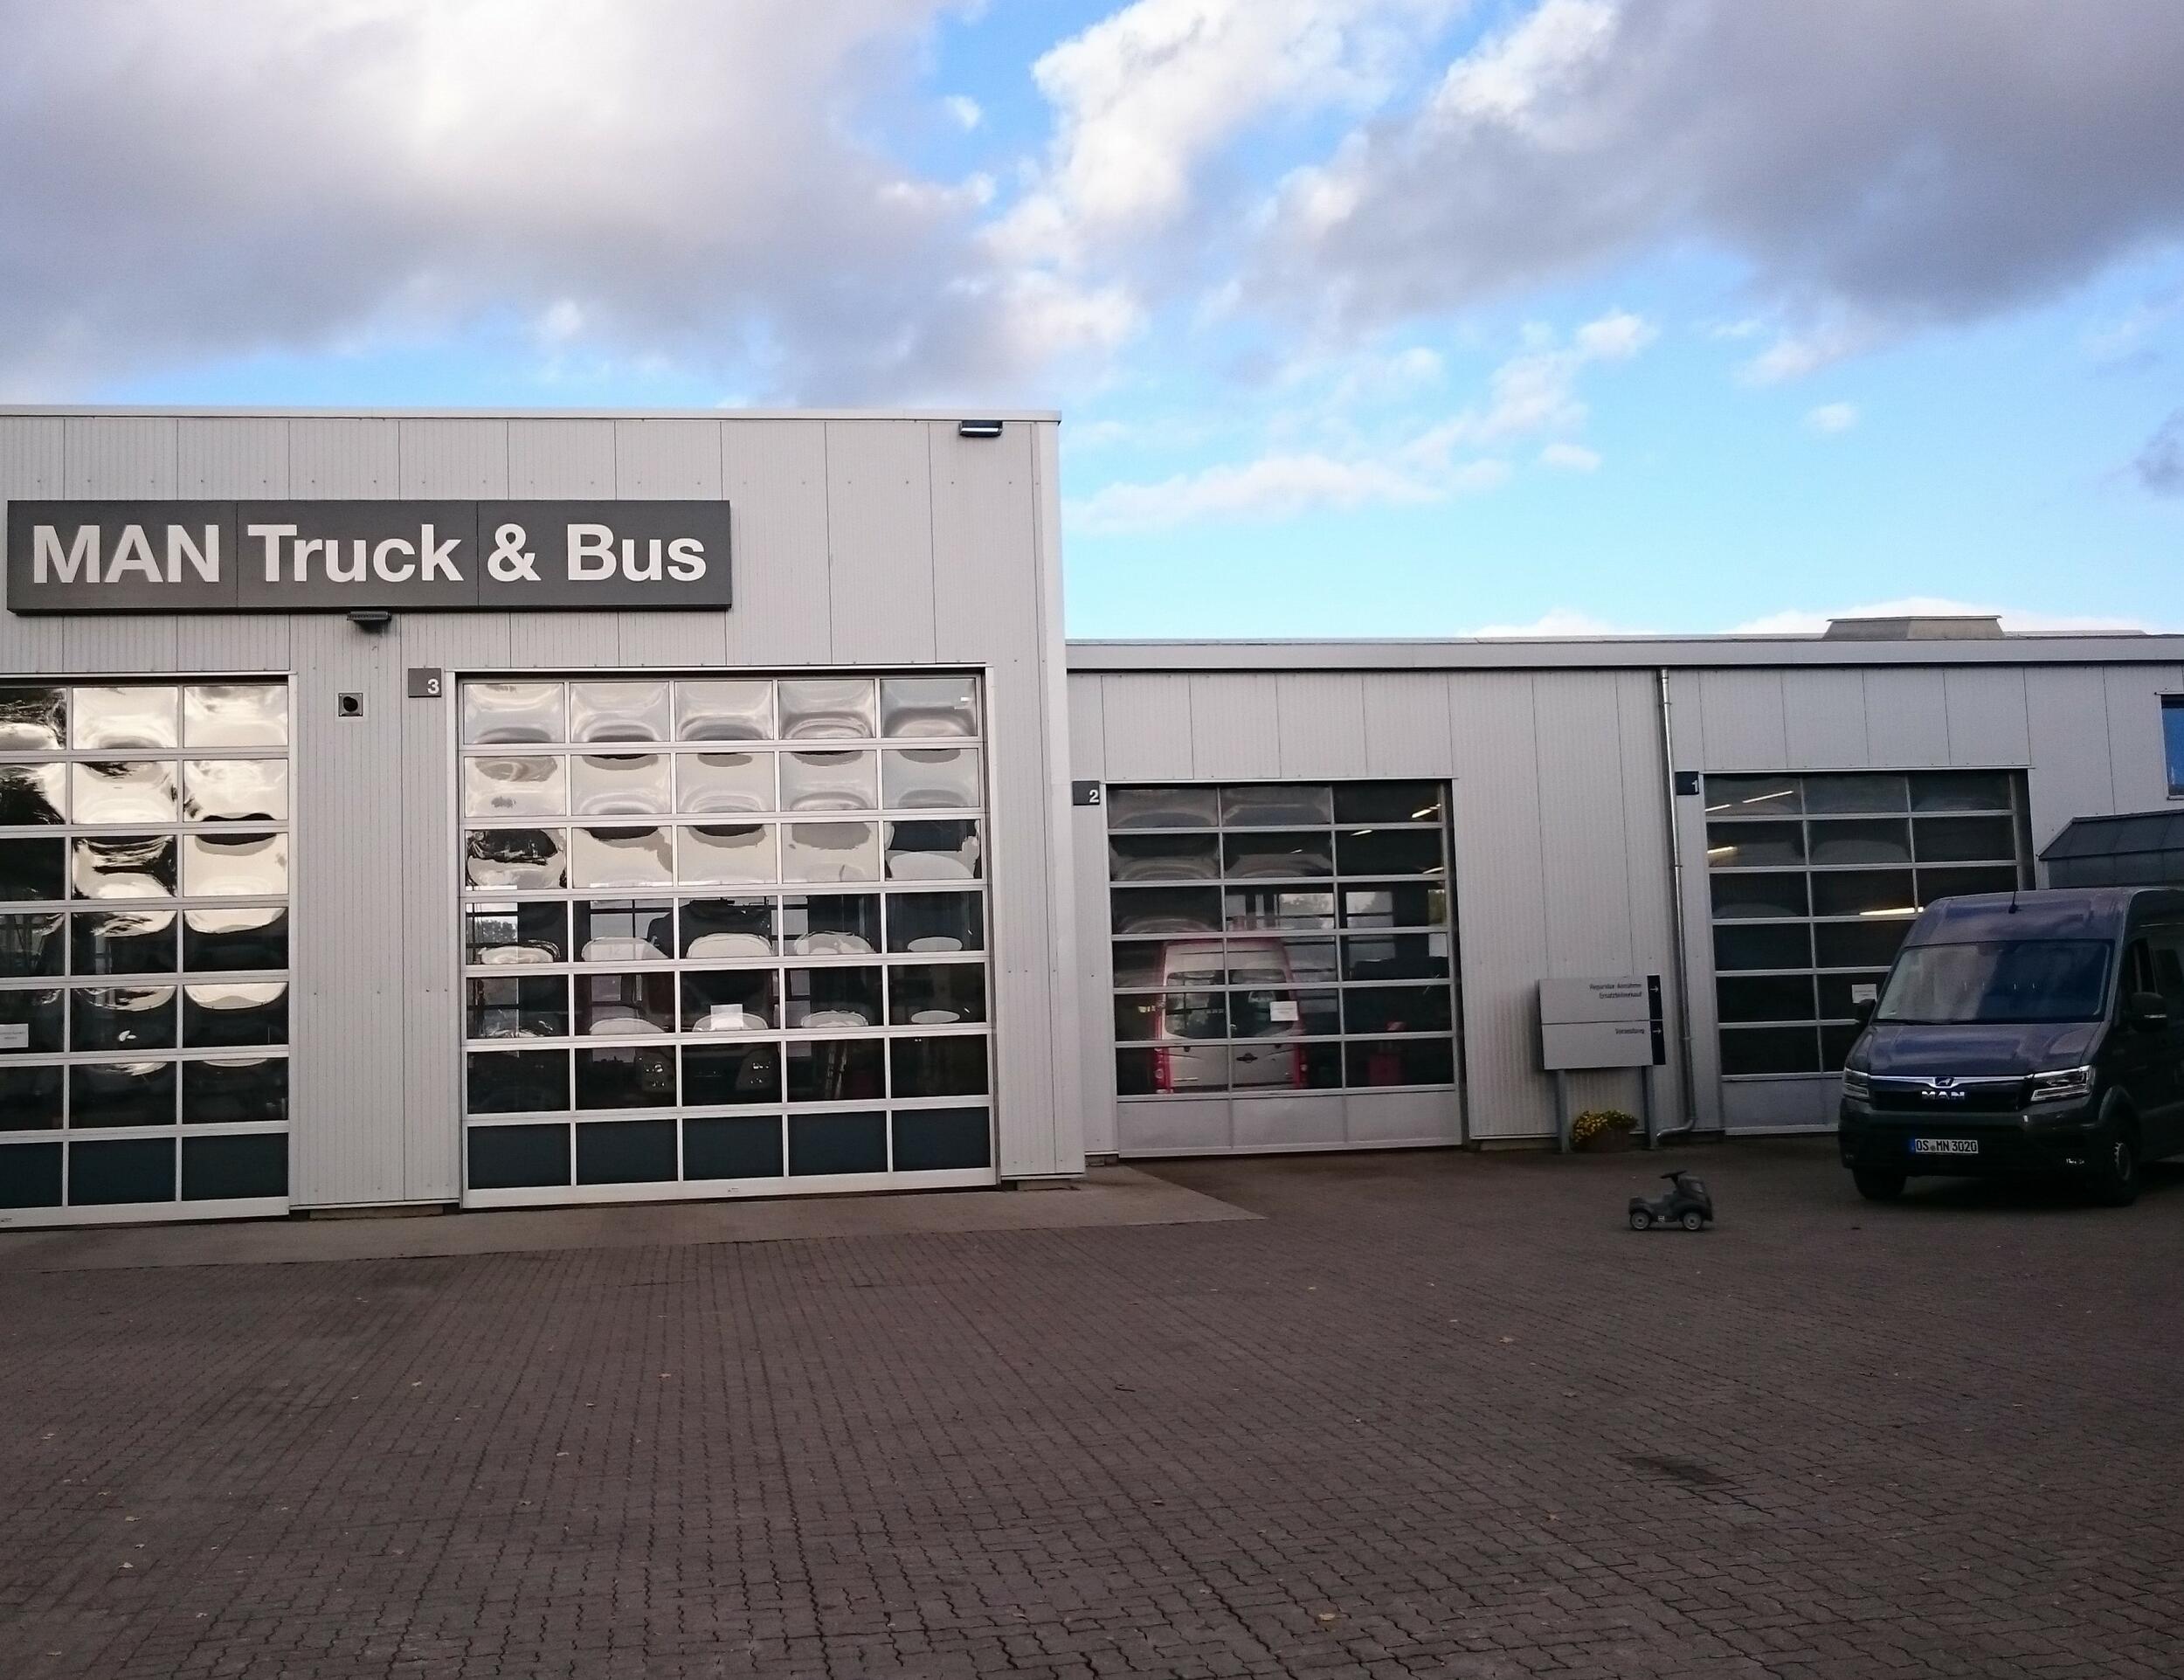 Herzlich Willkommen bei der Moritz Nutzfahrzeuge GmbH 
Servicepartner der MAN Truck & Bus Deutschland GmbH